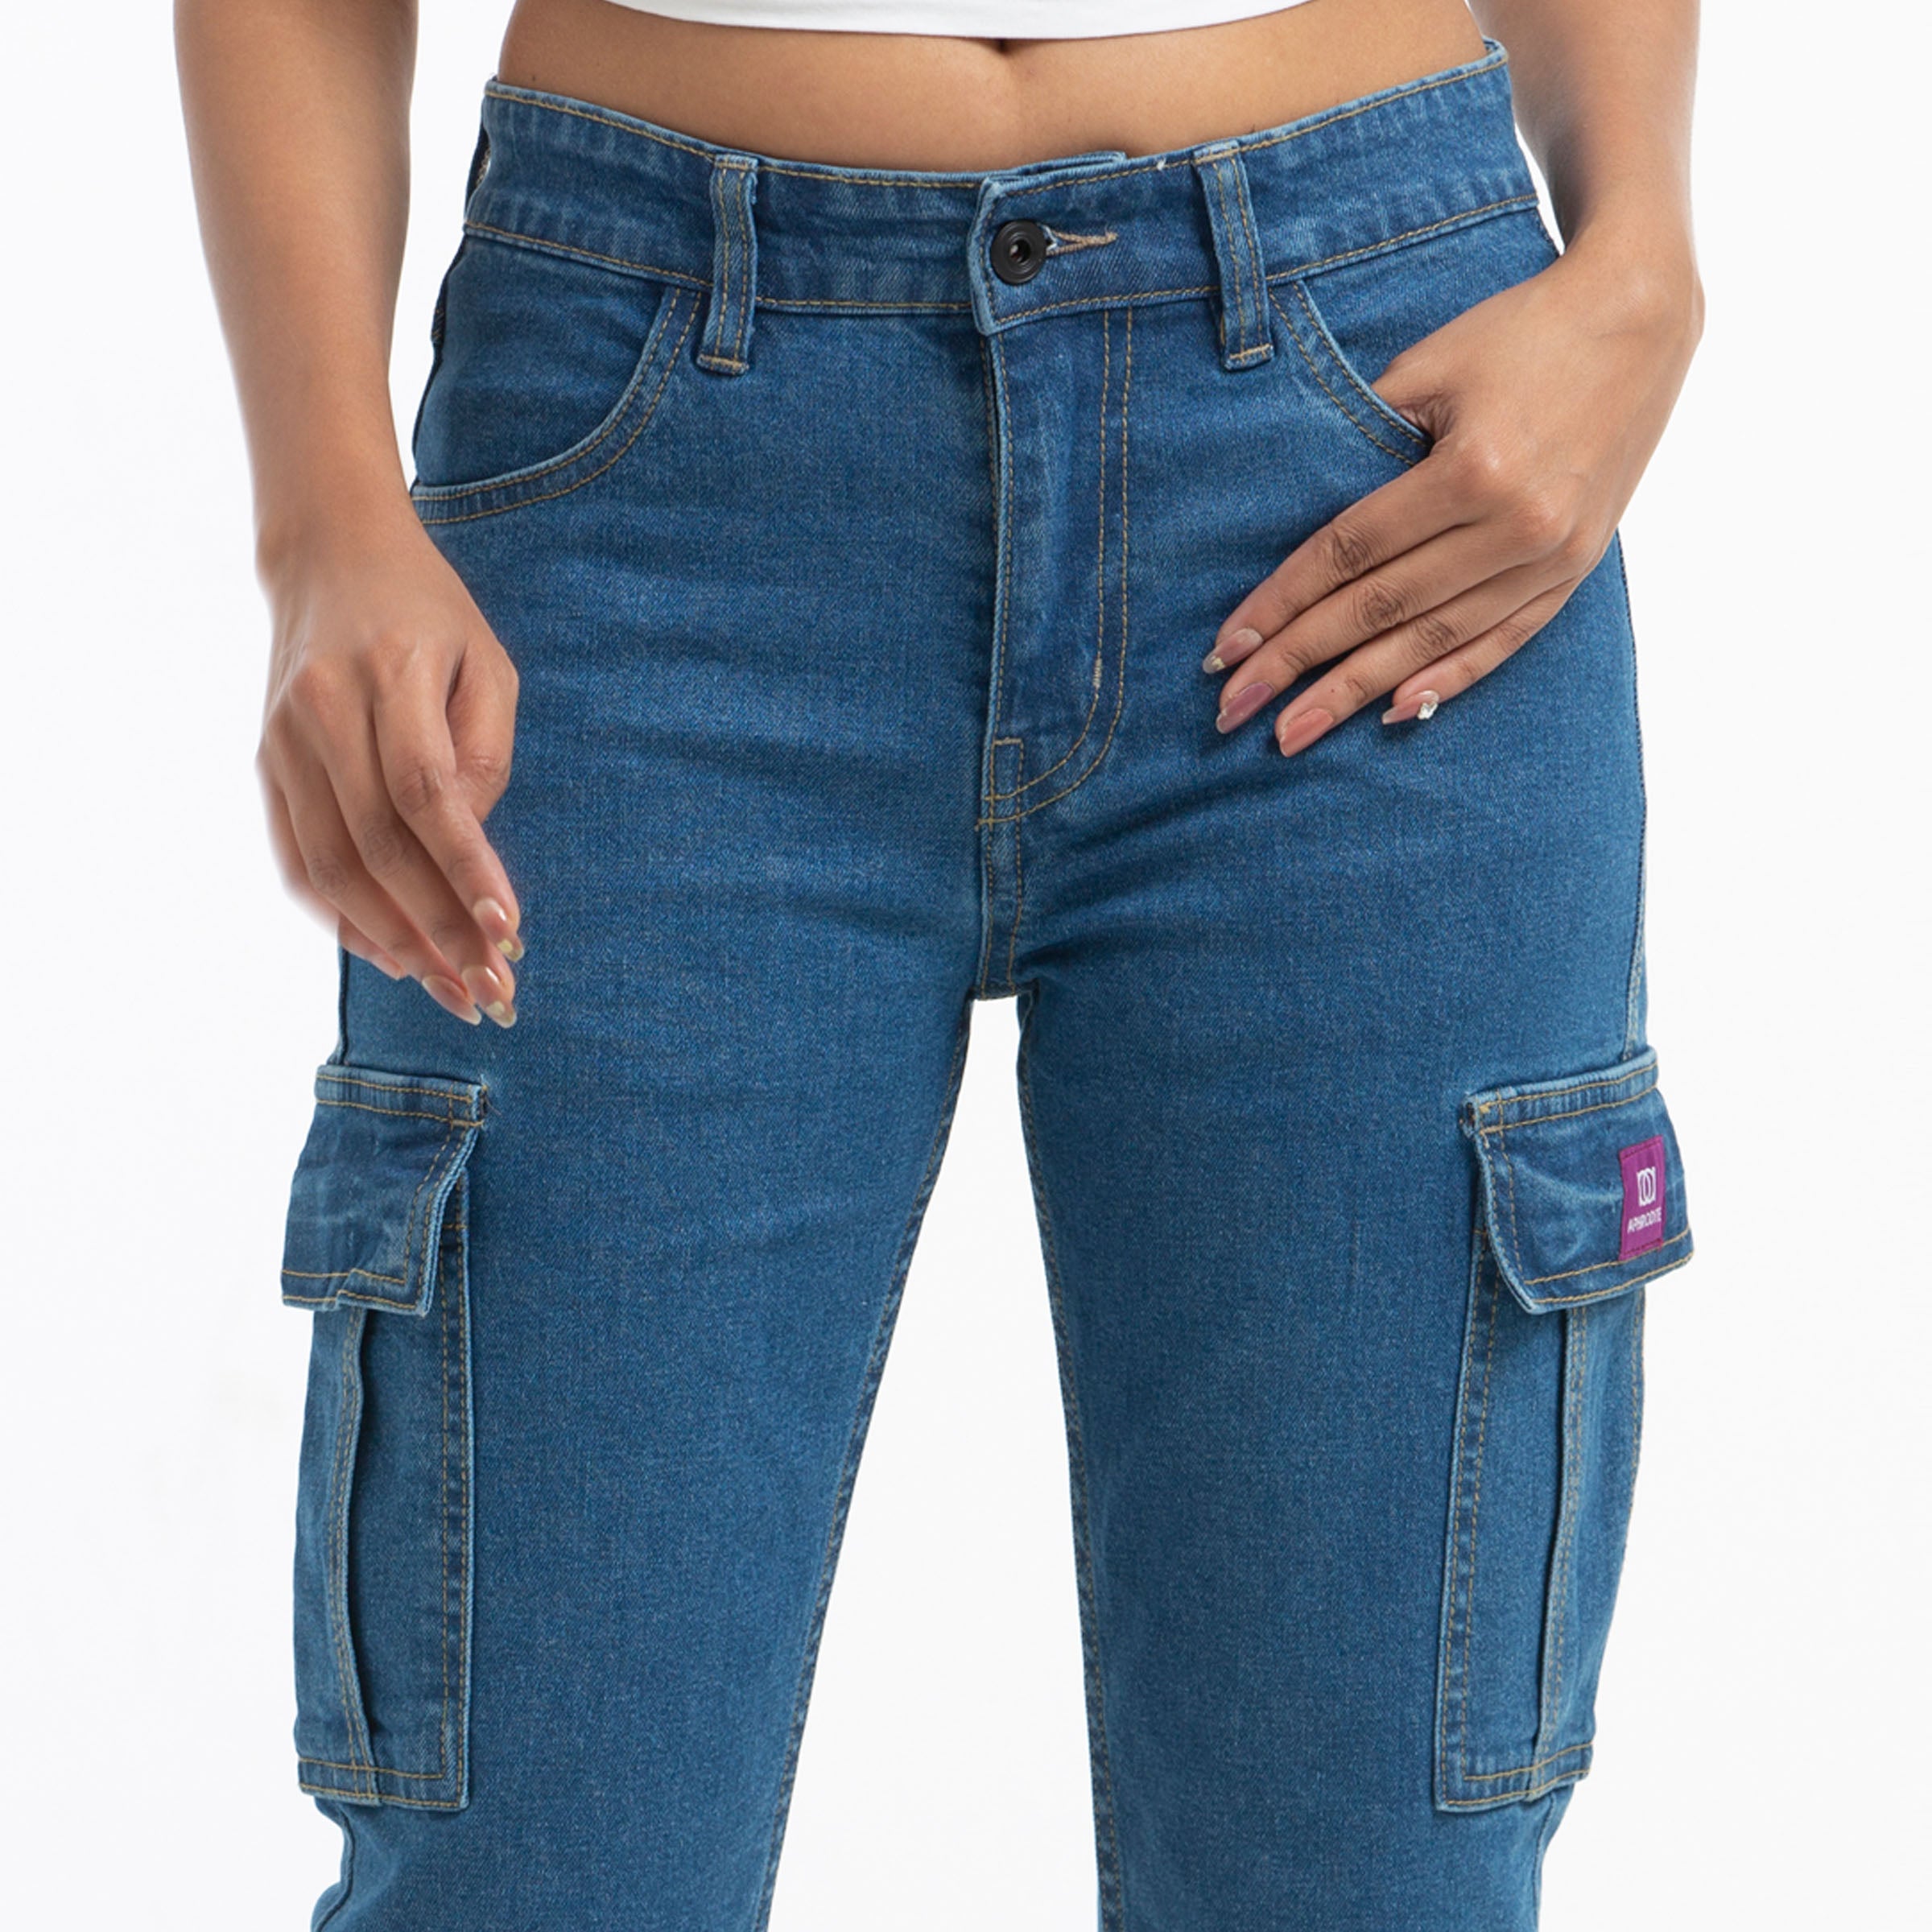 Ladies Denim Cargo Jeans Pant - Blue